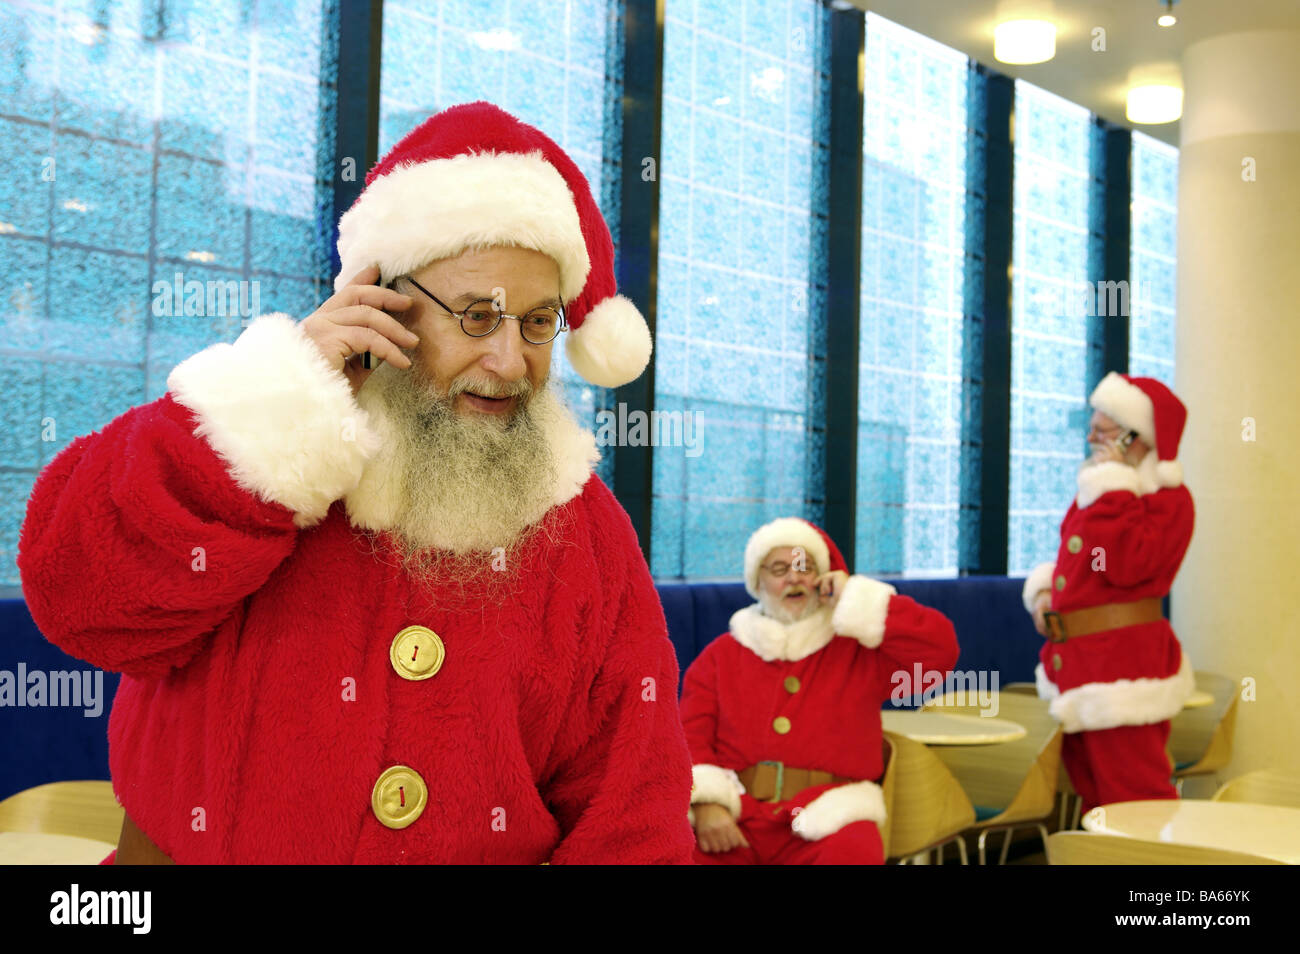 Cafeteria Santa Claus fröhlich Handys Telefone Unschärfe Weihnachten Menschen Männer drei Verkleidung Outfits Gläser Bärte Stockfoto